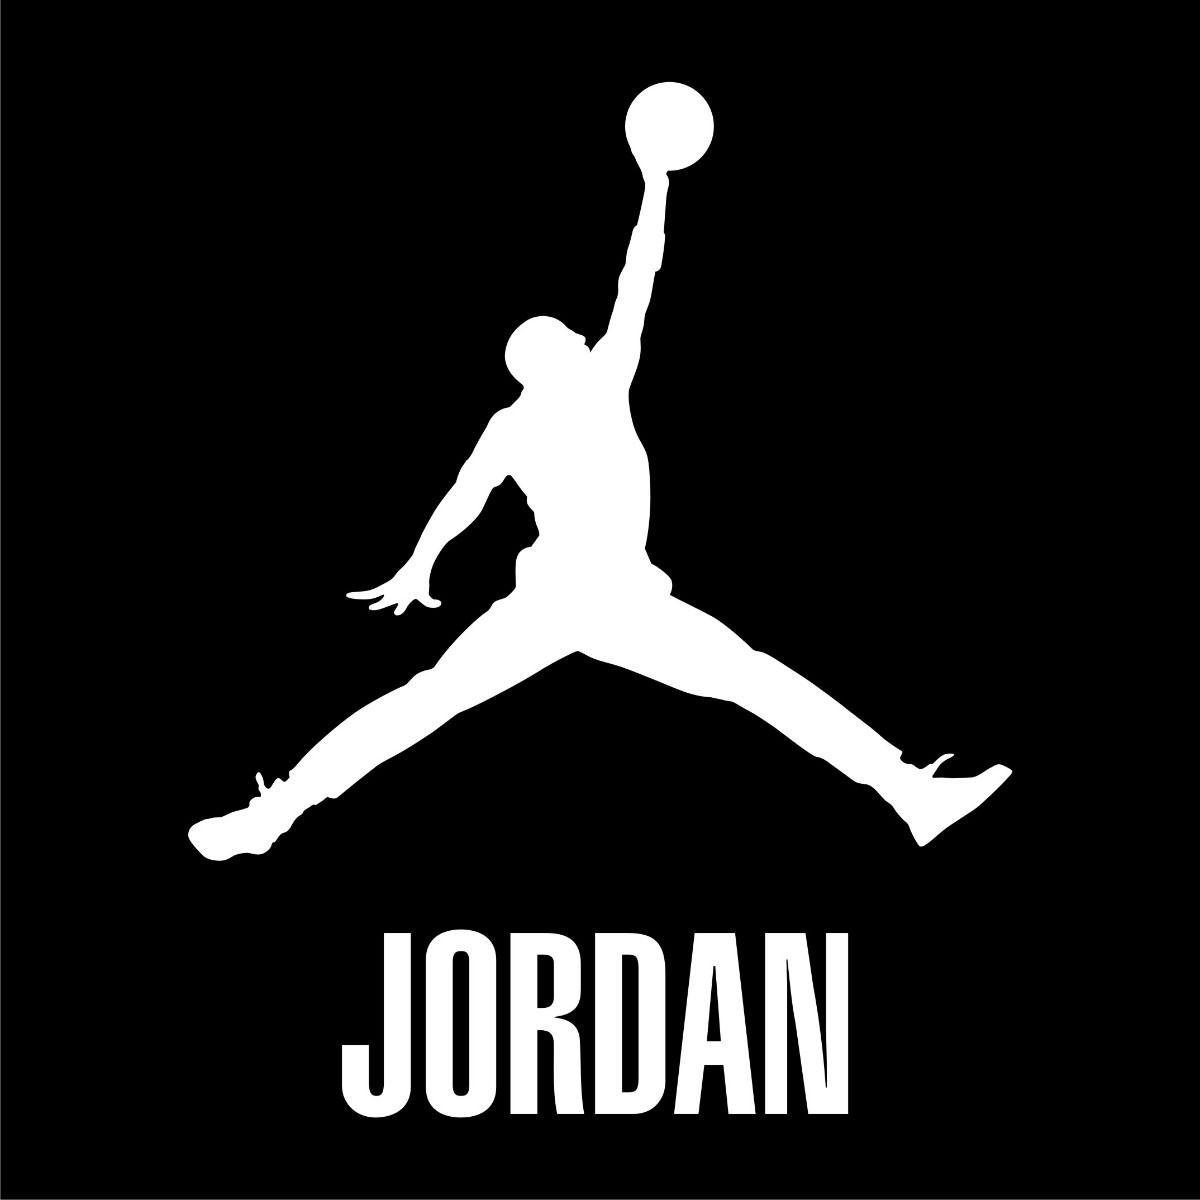 Air Jordan. Logos. Air jordan, Logos